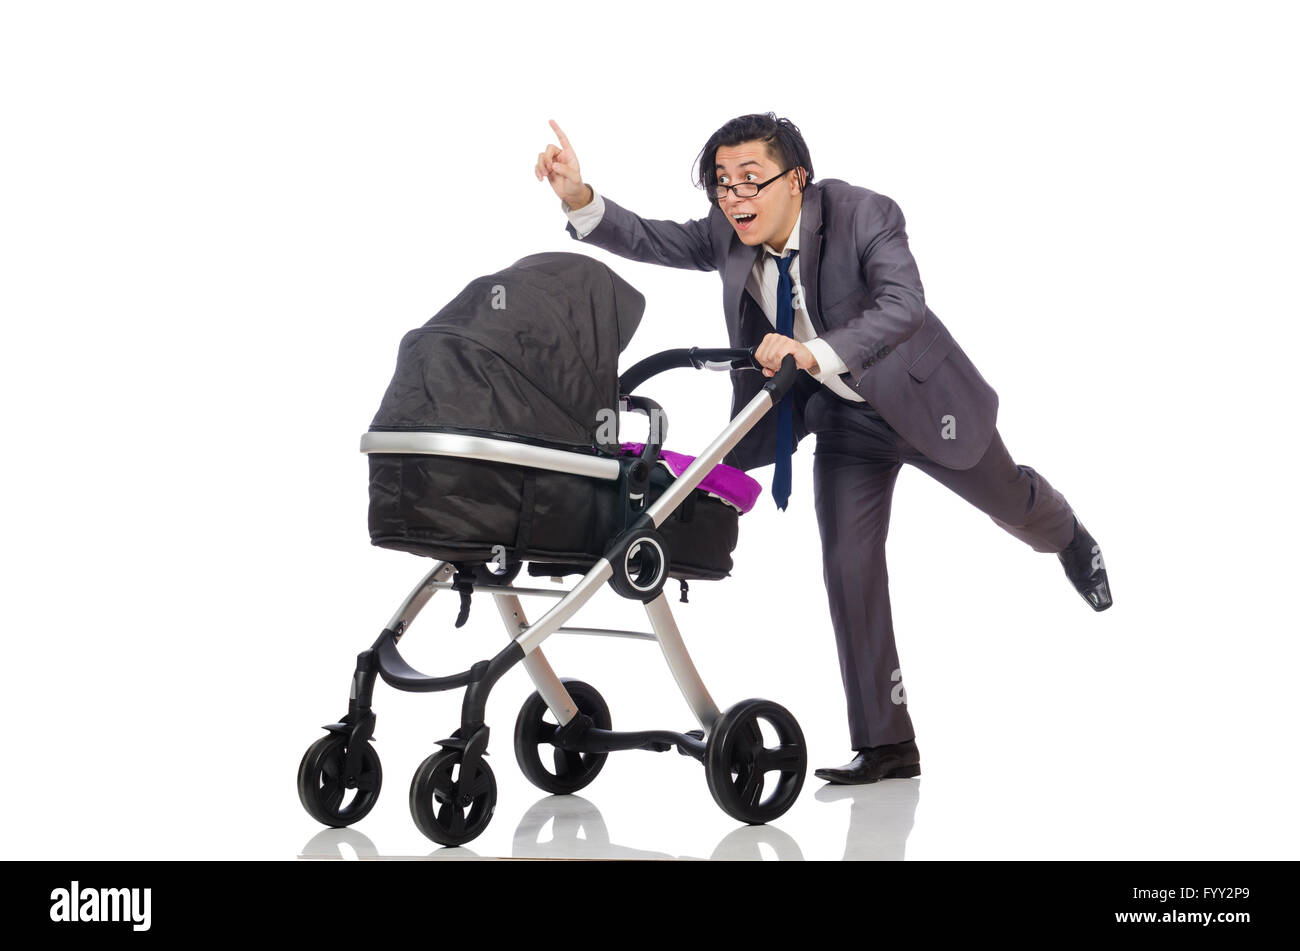 Lustige Papa mit Baby und Kinderwagen auf weiß Stockfotografie - Alamy